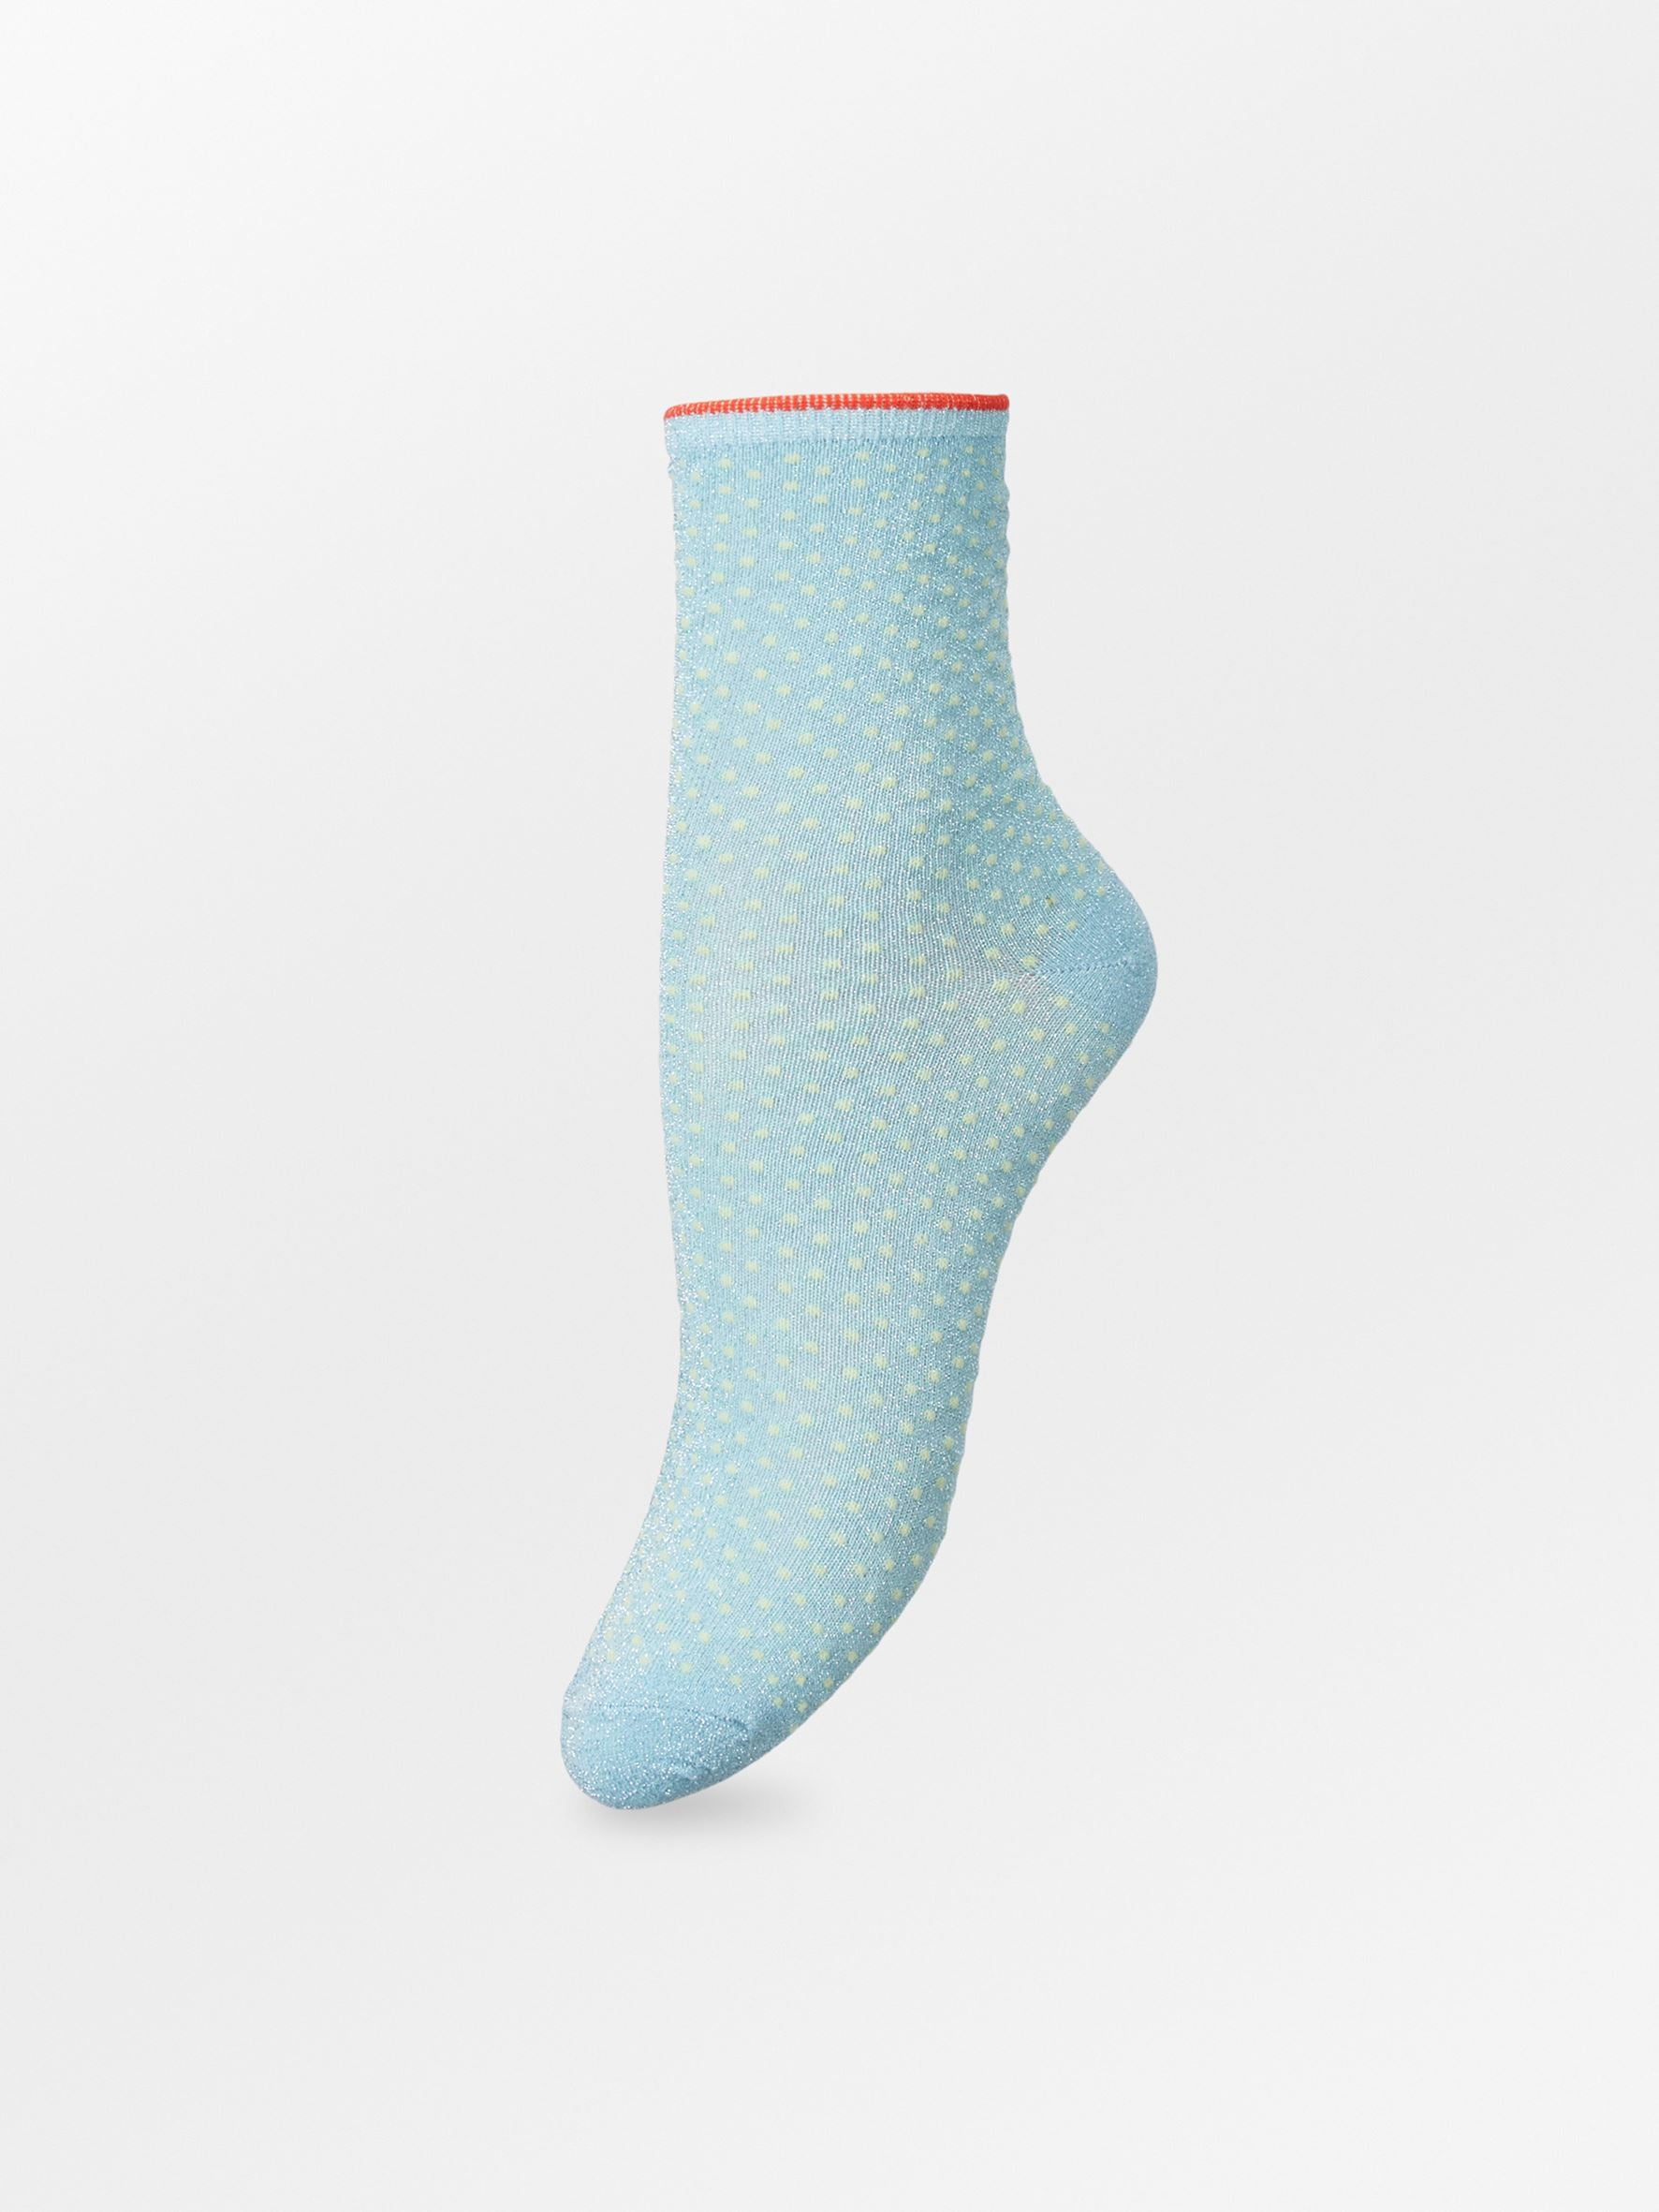 Becksöndergaard, Dina Small Dots Coll. - Powder Blue, socks, socks